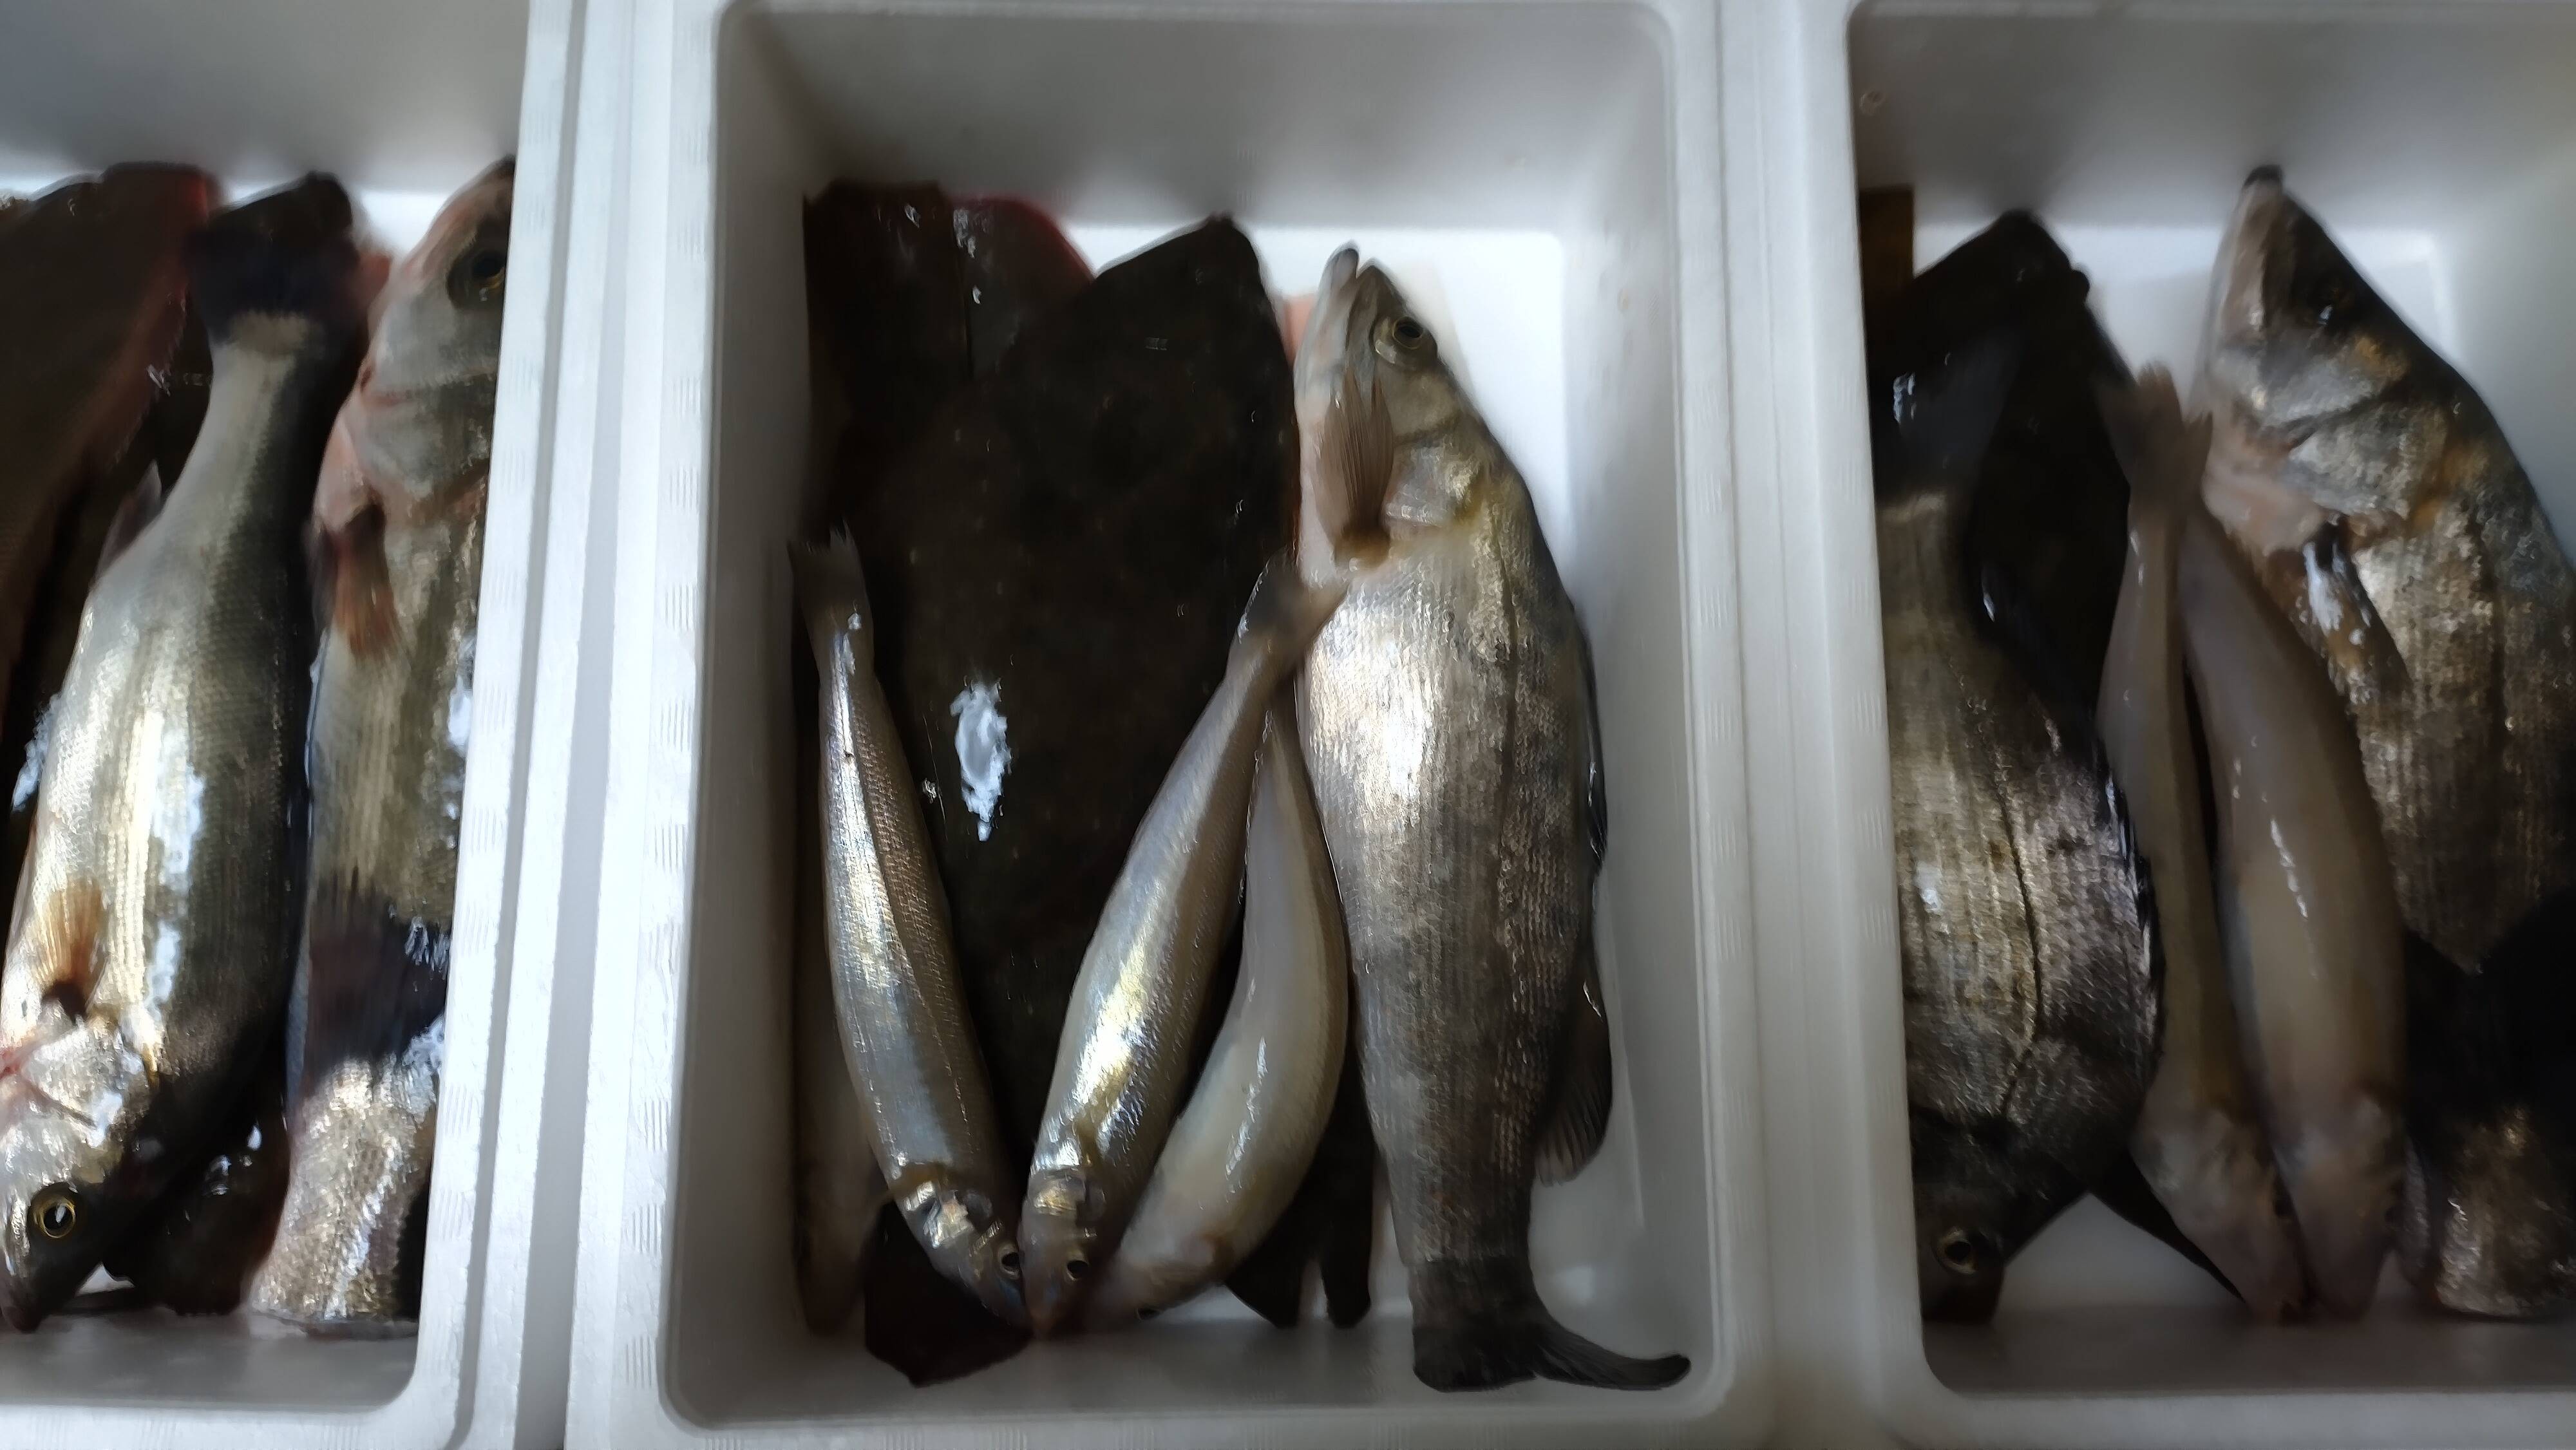 親子で捕まえた八代海の魚達 魚詰め合わせbox 1日5セット限定 熊本県産 食べチョク 農家 漁師の産直ネット通販 旬の食材を生産者直送